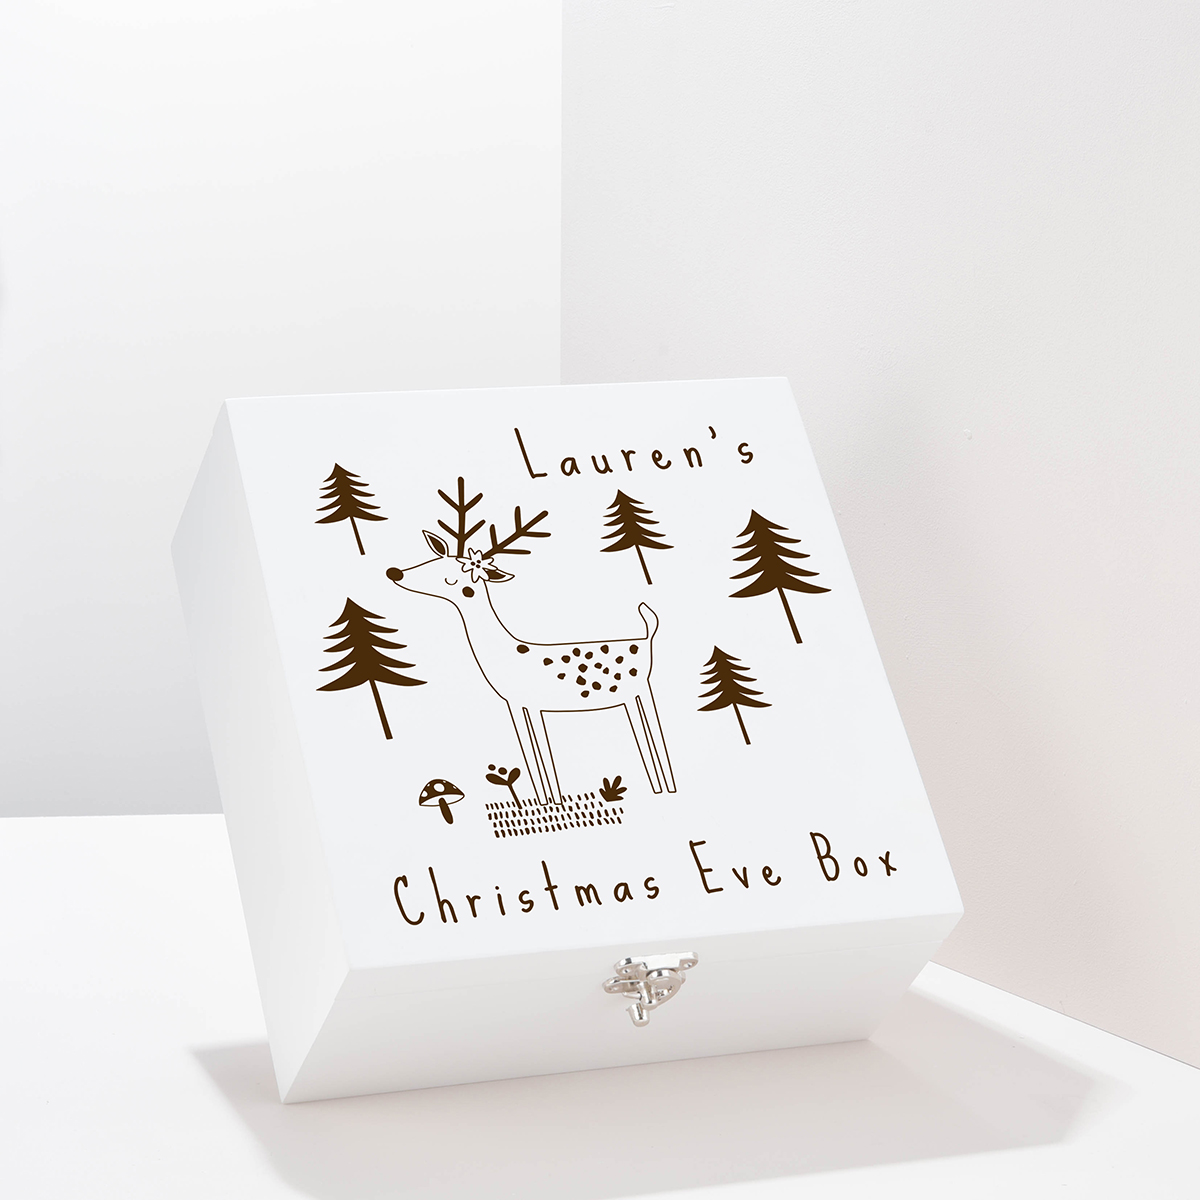 Personalised Wooden Christmas Eve Box - Reindeer